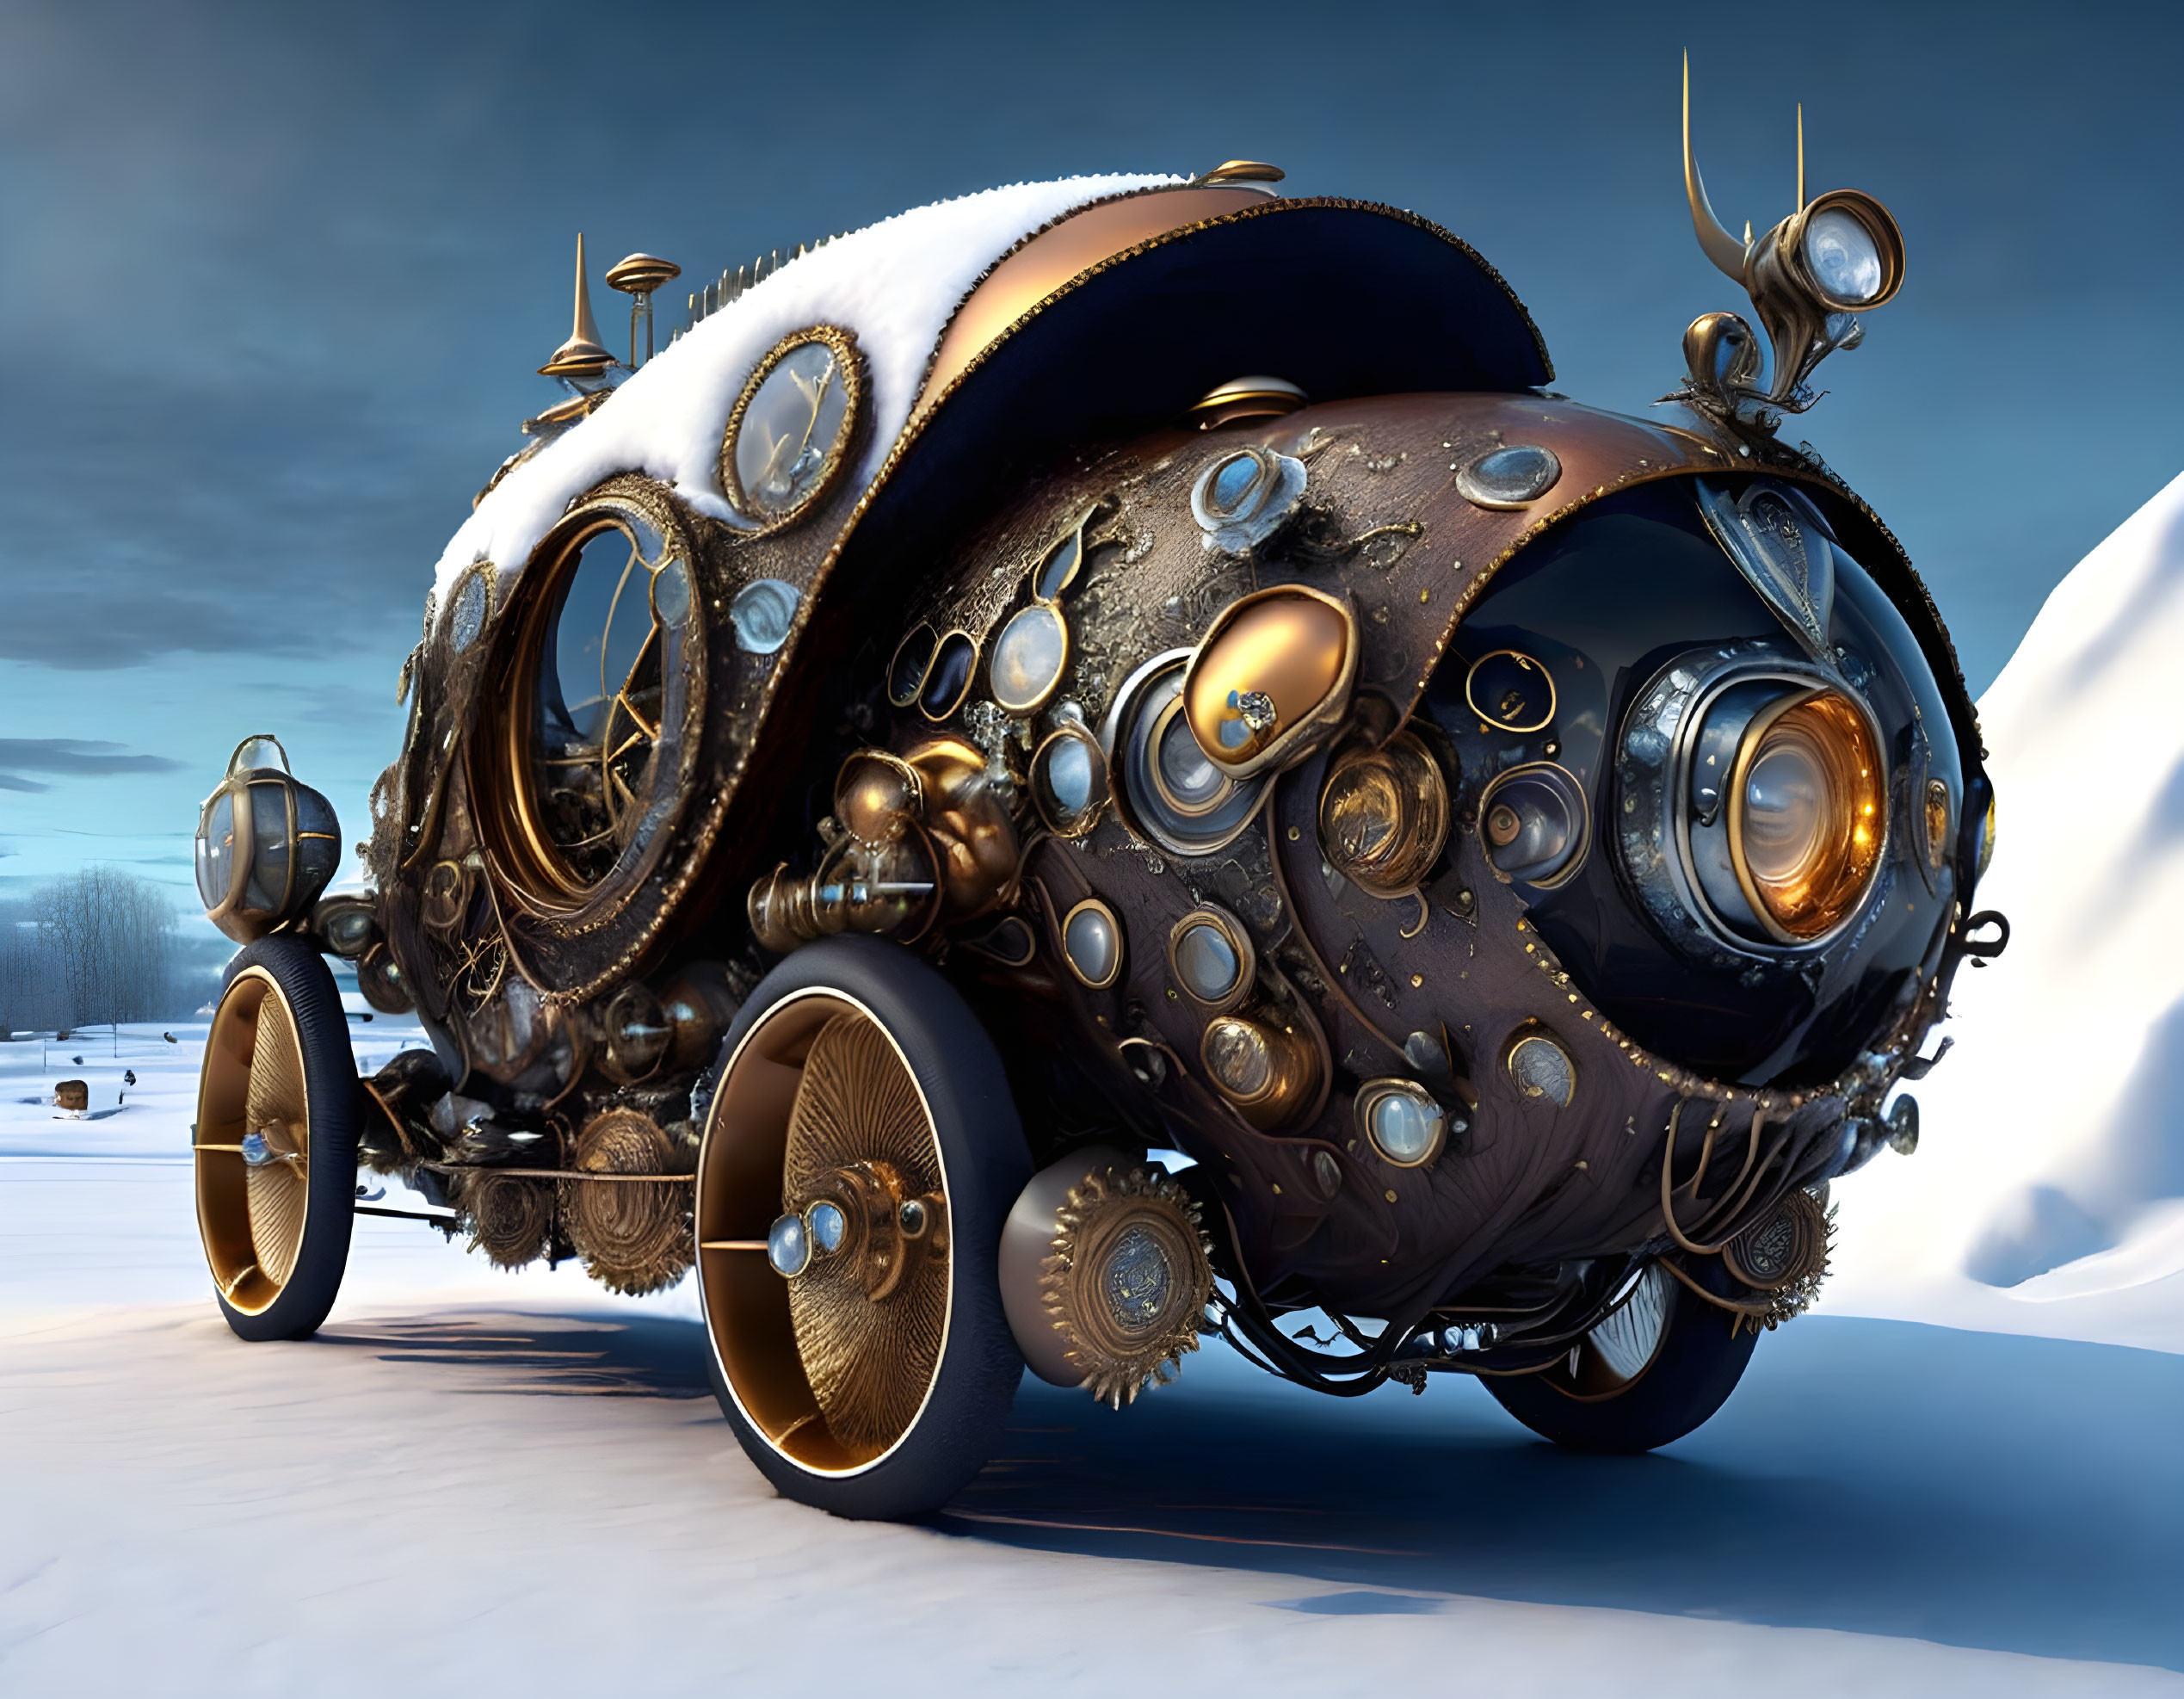  Fantasy biomorphic steampunk automobile